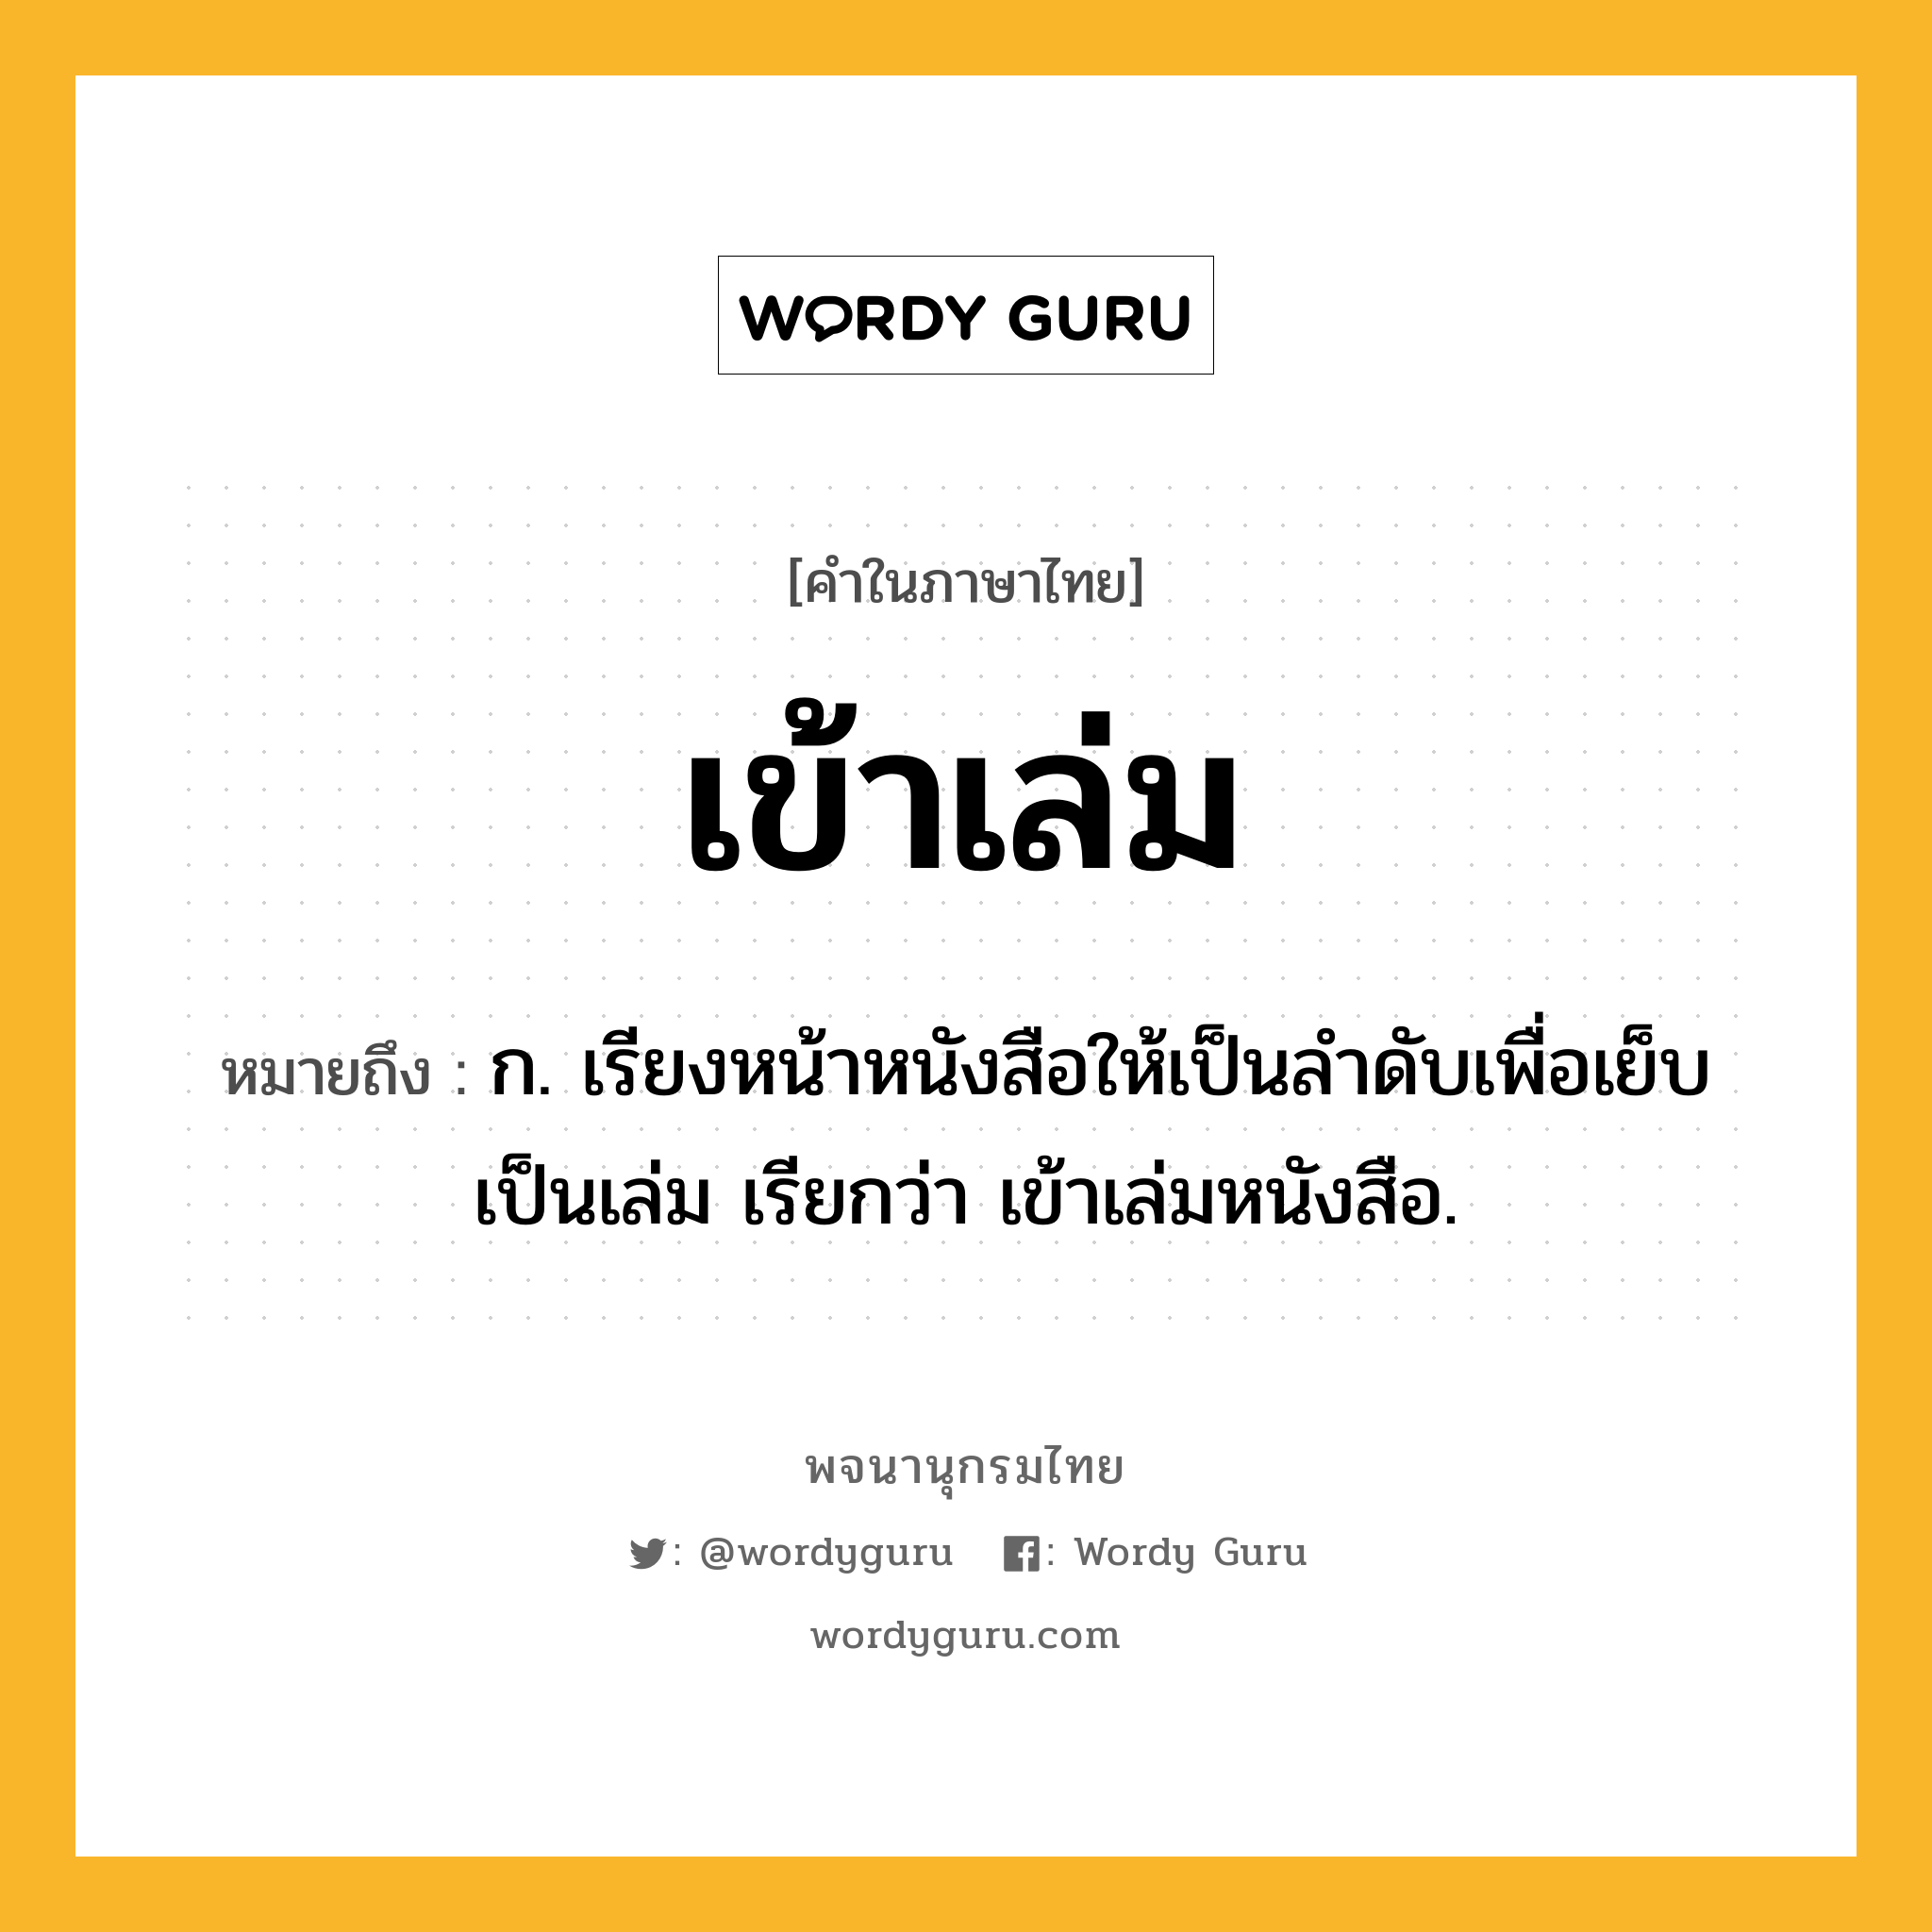 เข้าเล่ม หมายถึงอะไร?, คำในภาษาไทย เข้าเล่ม หมายถึง ก. เรียงหน้าหนังสือให้เป็นลําดับเพื่อเย็บเป็นเล่ม เรียกว่า เข้าเล่มหนังสือ.